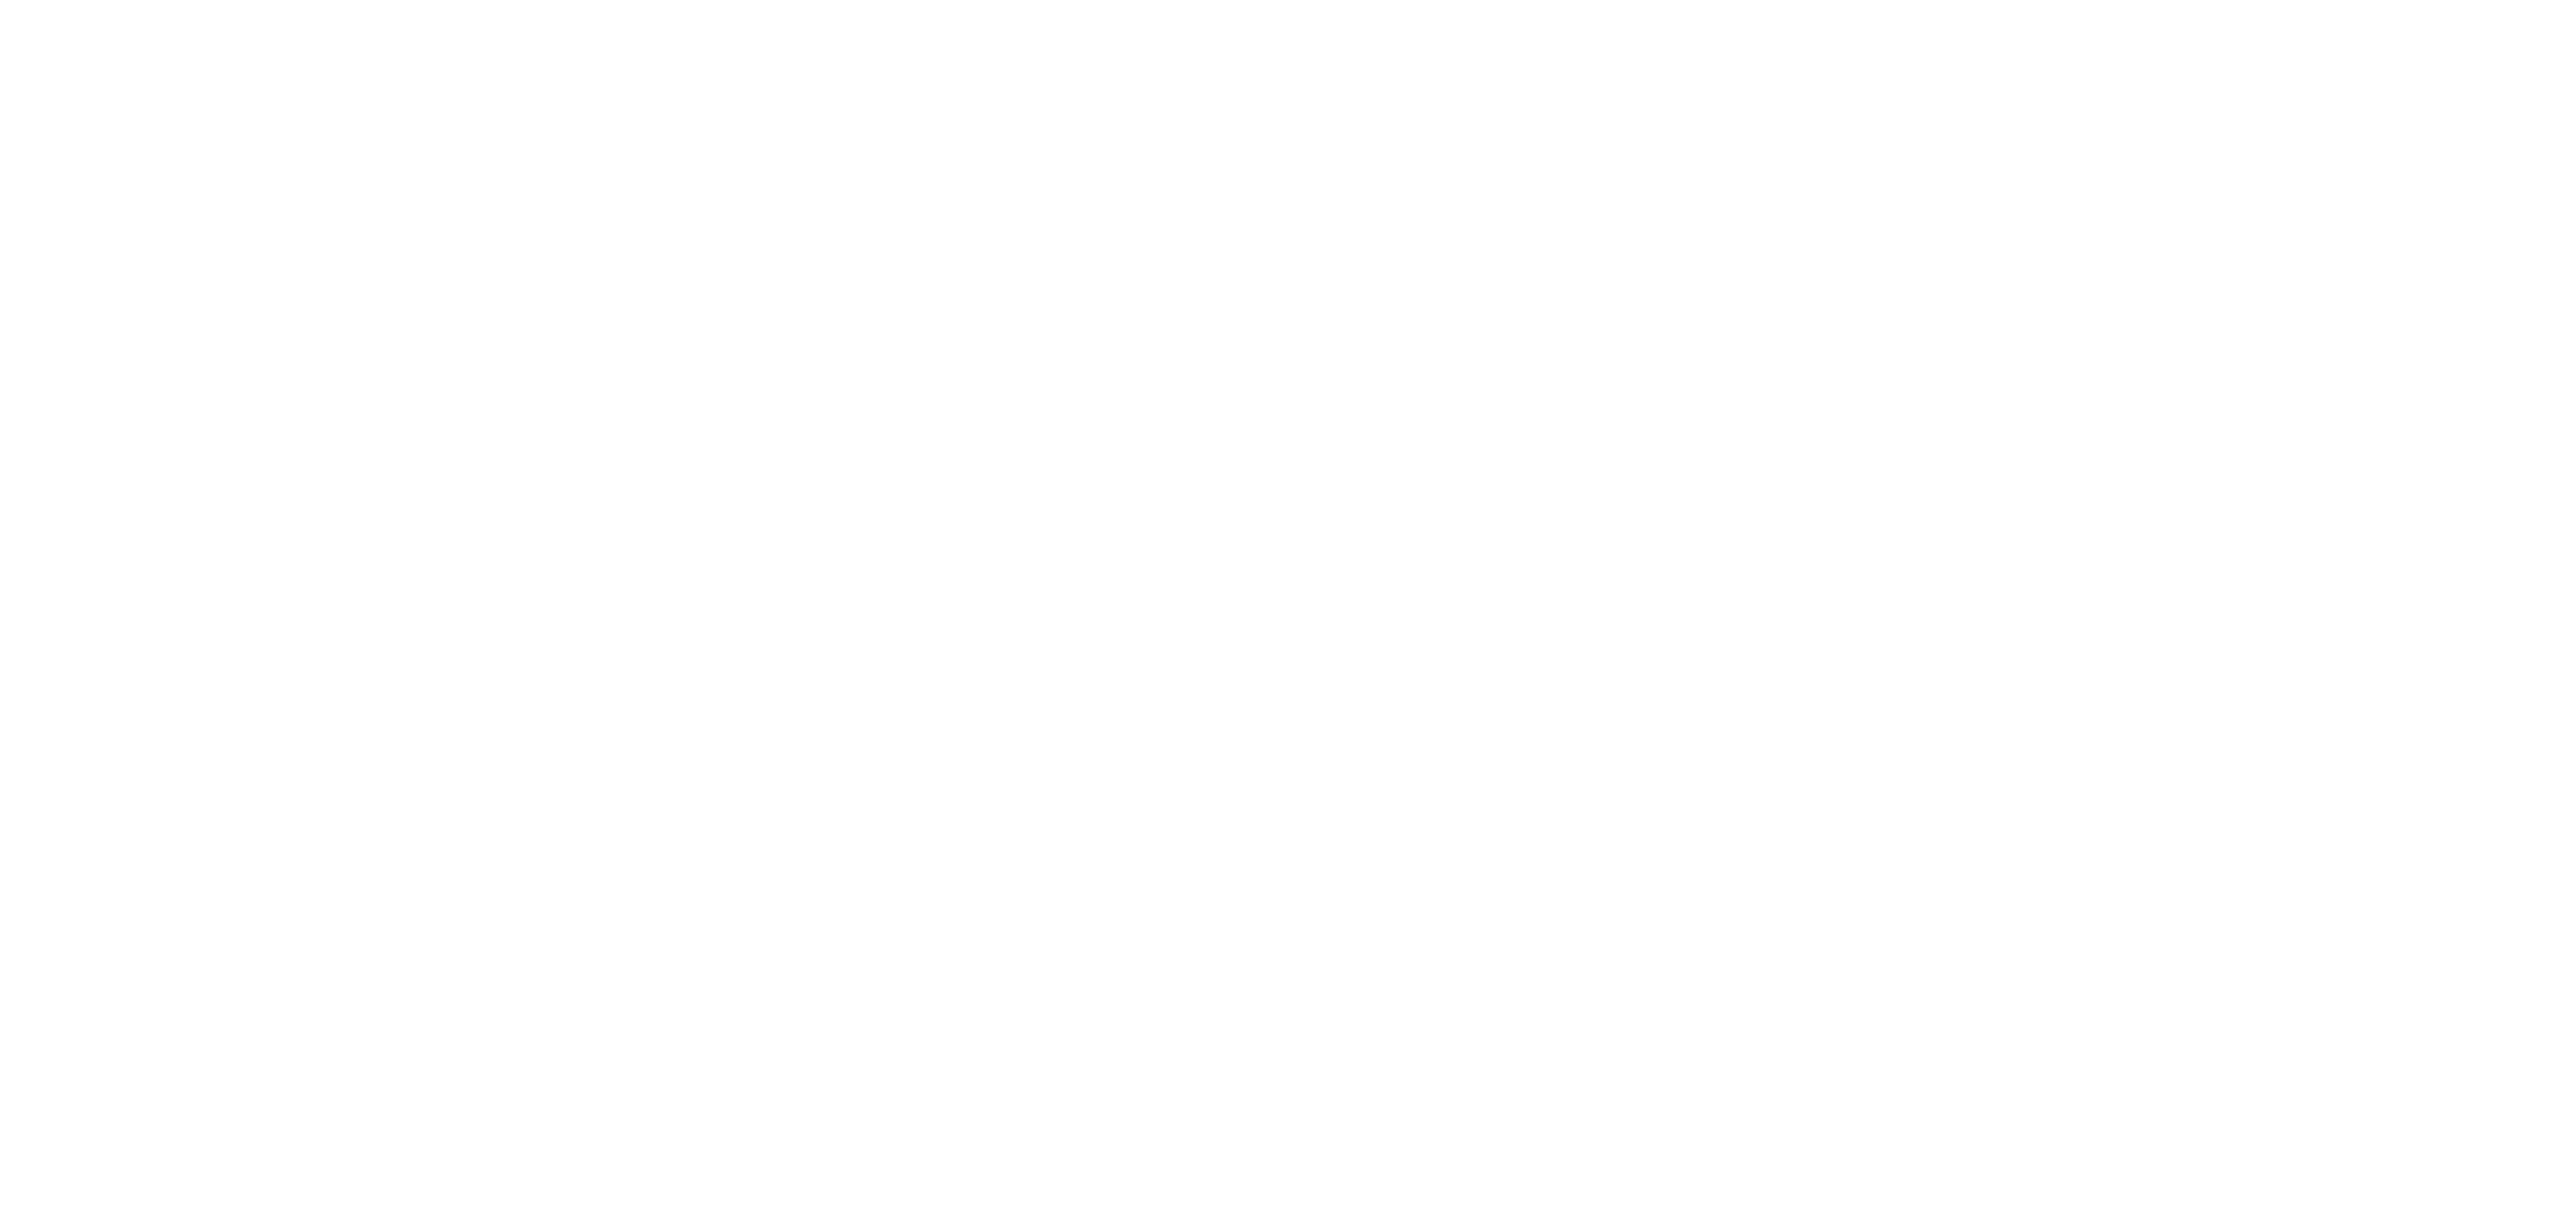 Tampereen energia